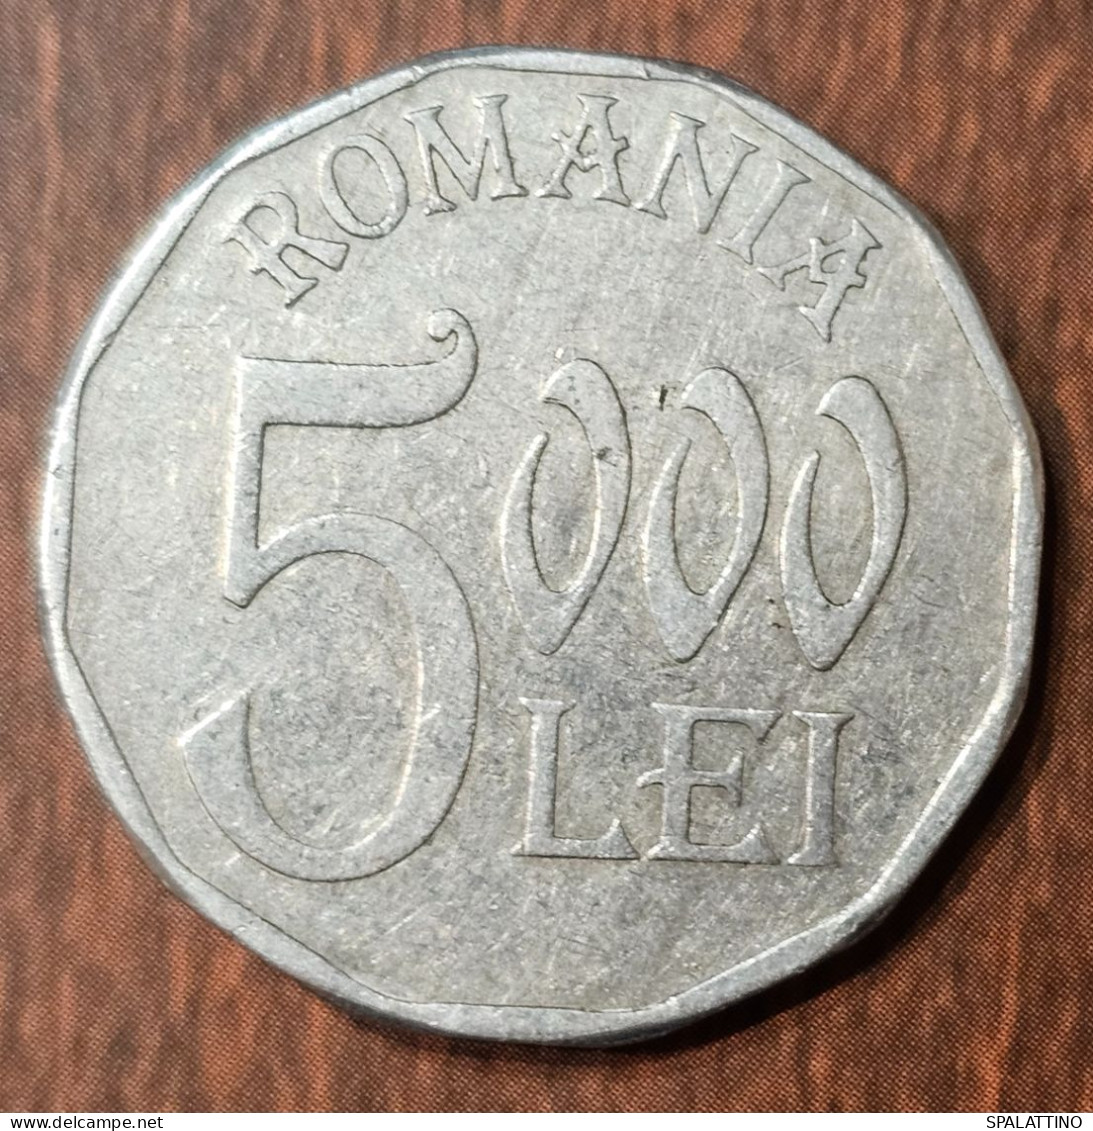 ROMANIA- 5000 LEI 2001. - Roumanie